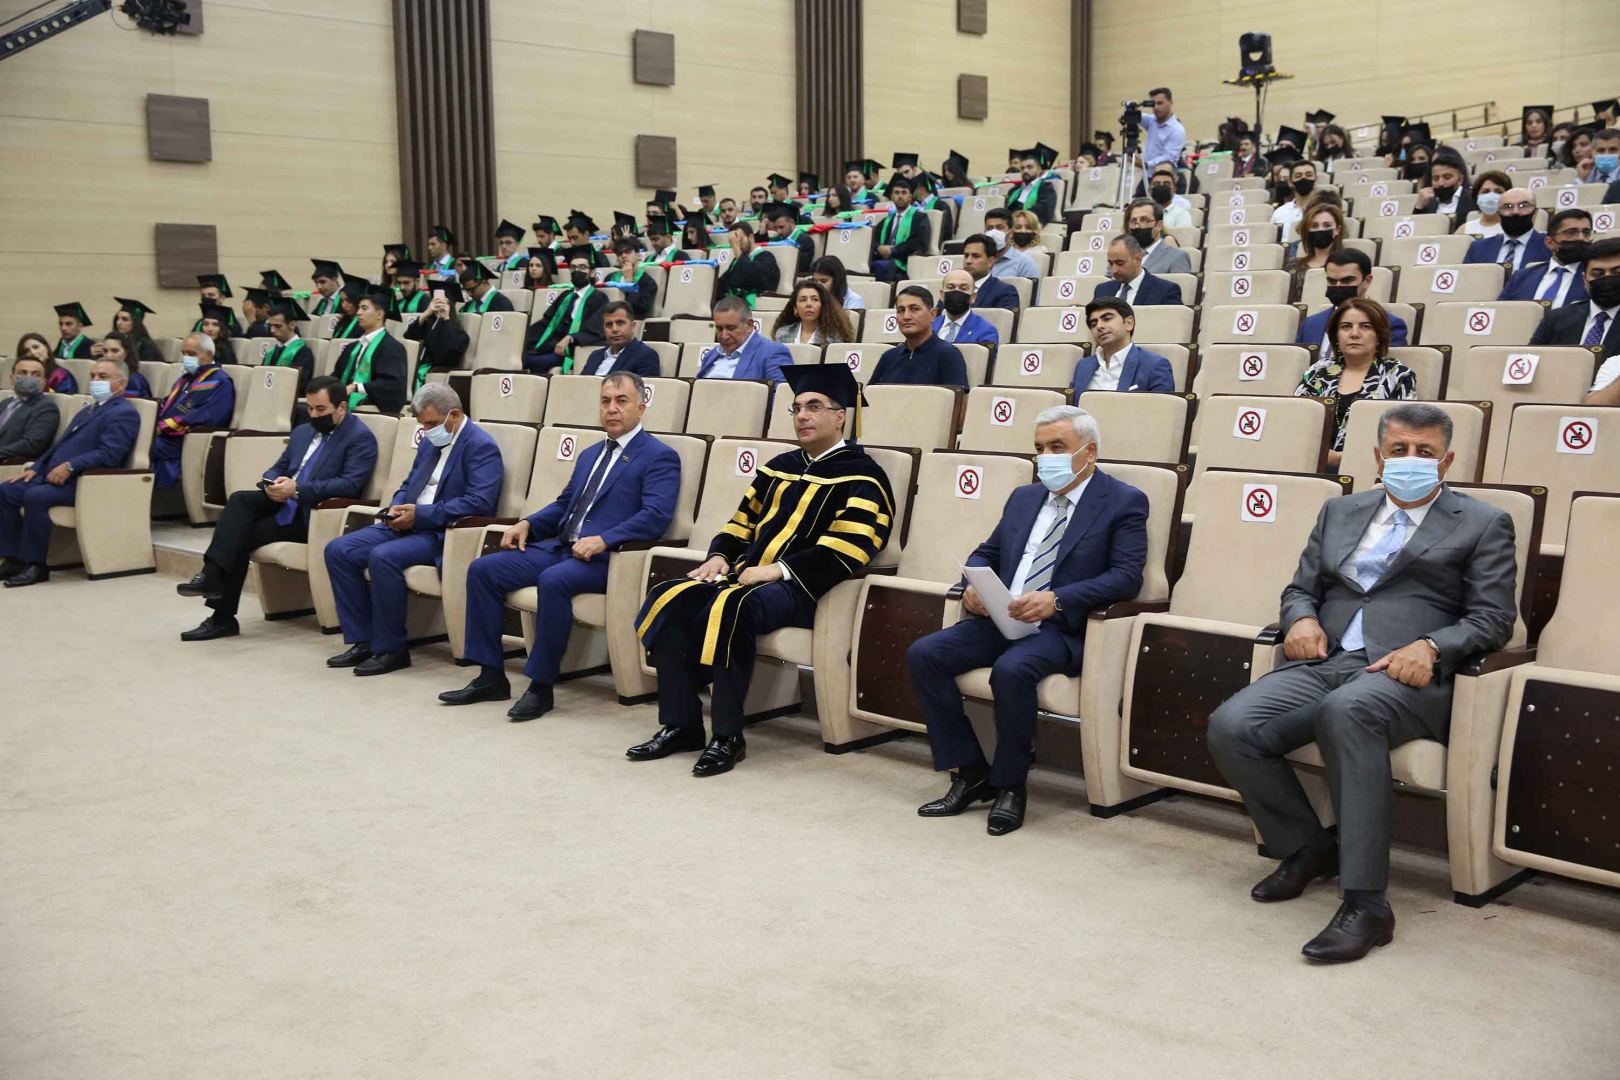 В Бакинской высшей школе нефти прошел «День выпускника» (ФОТО)